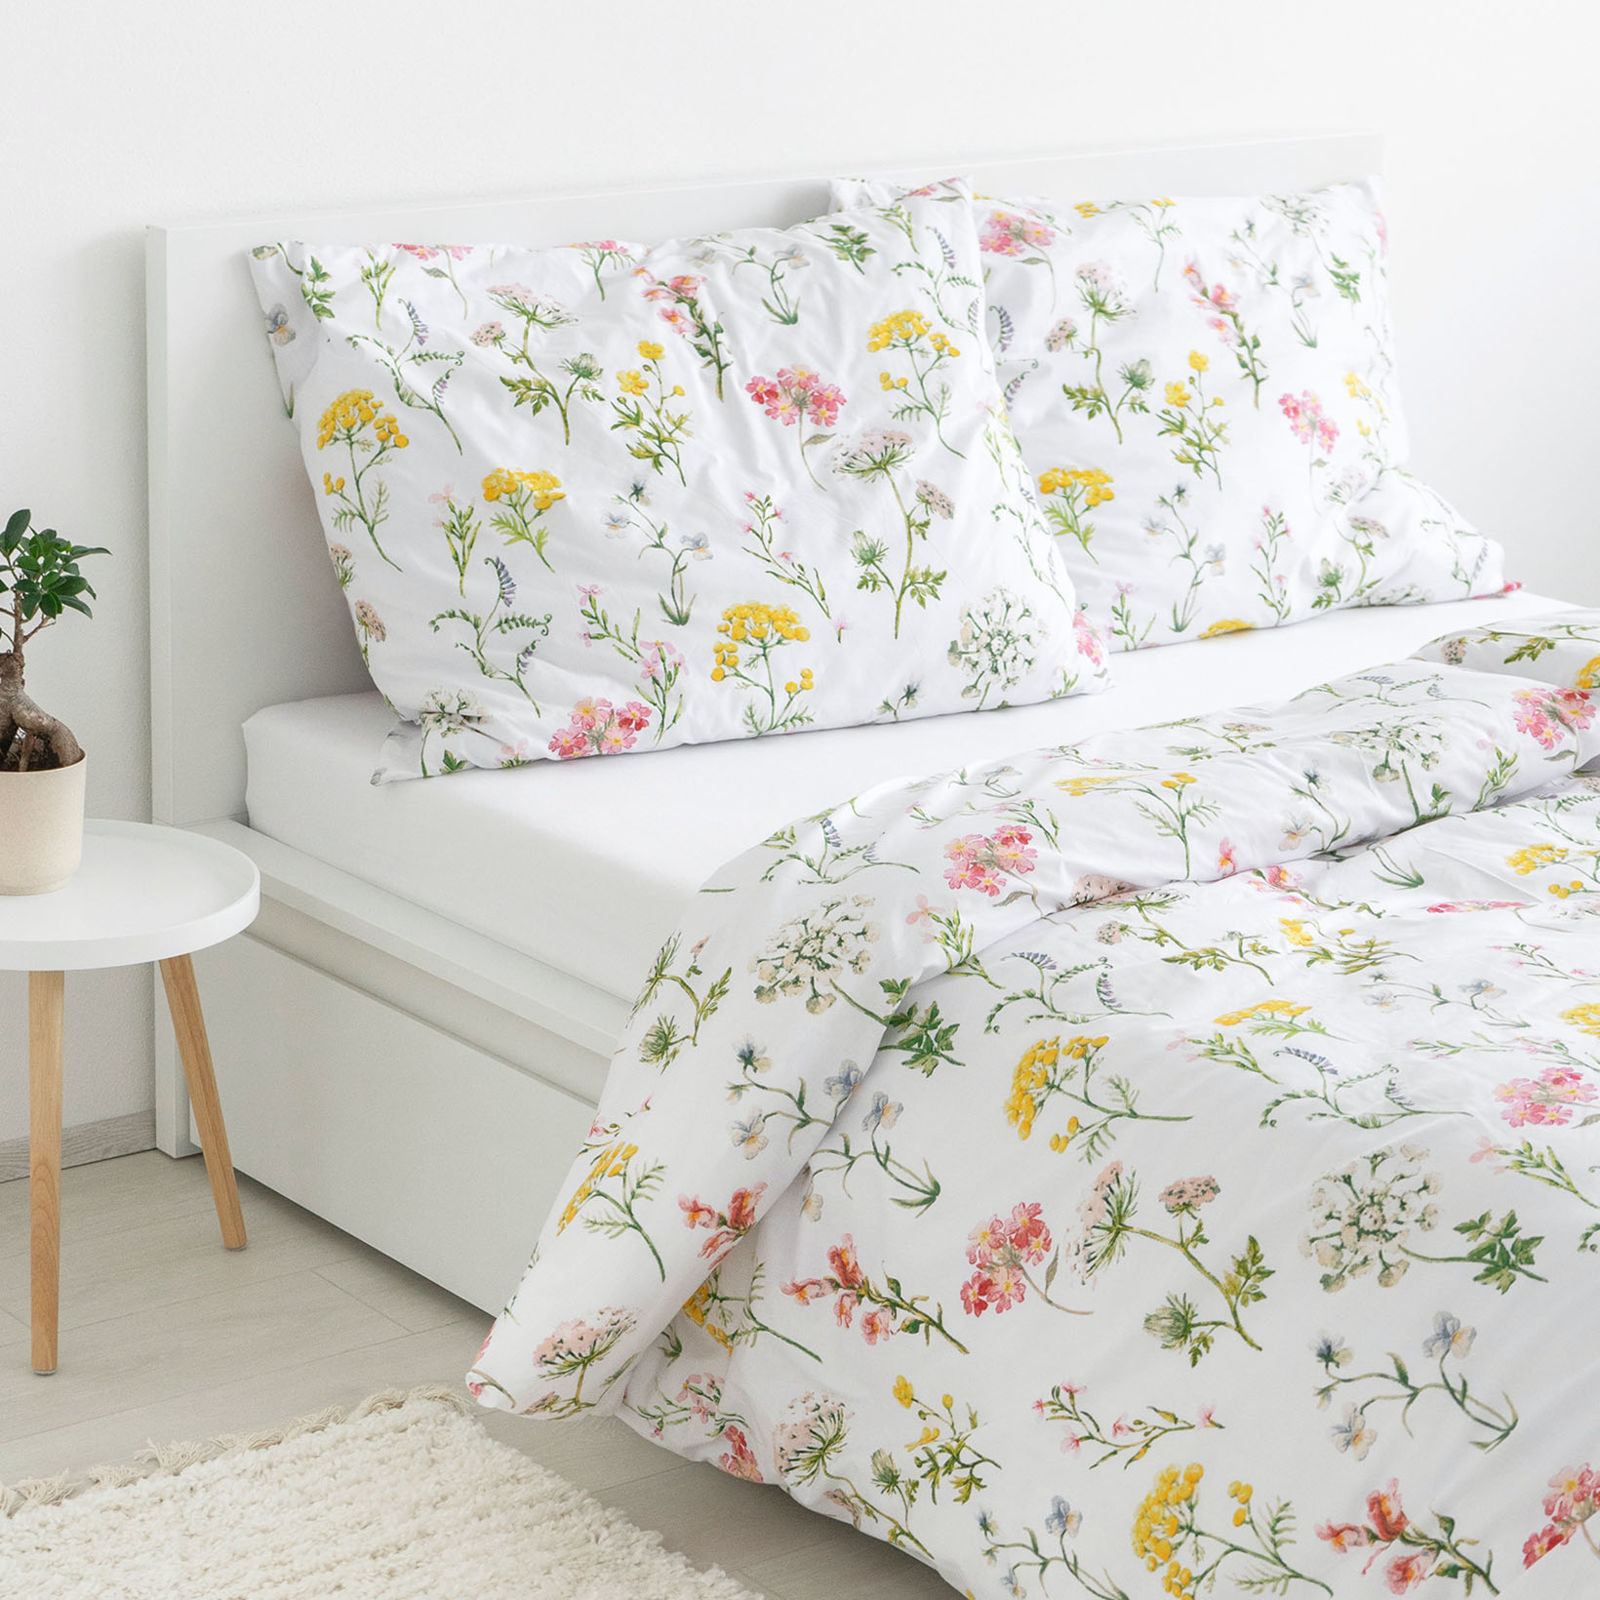 Bavlnené posteľné obliečky - kvitnúca lúka